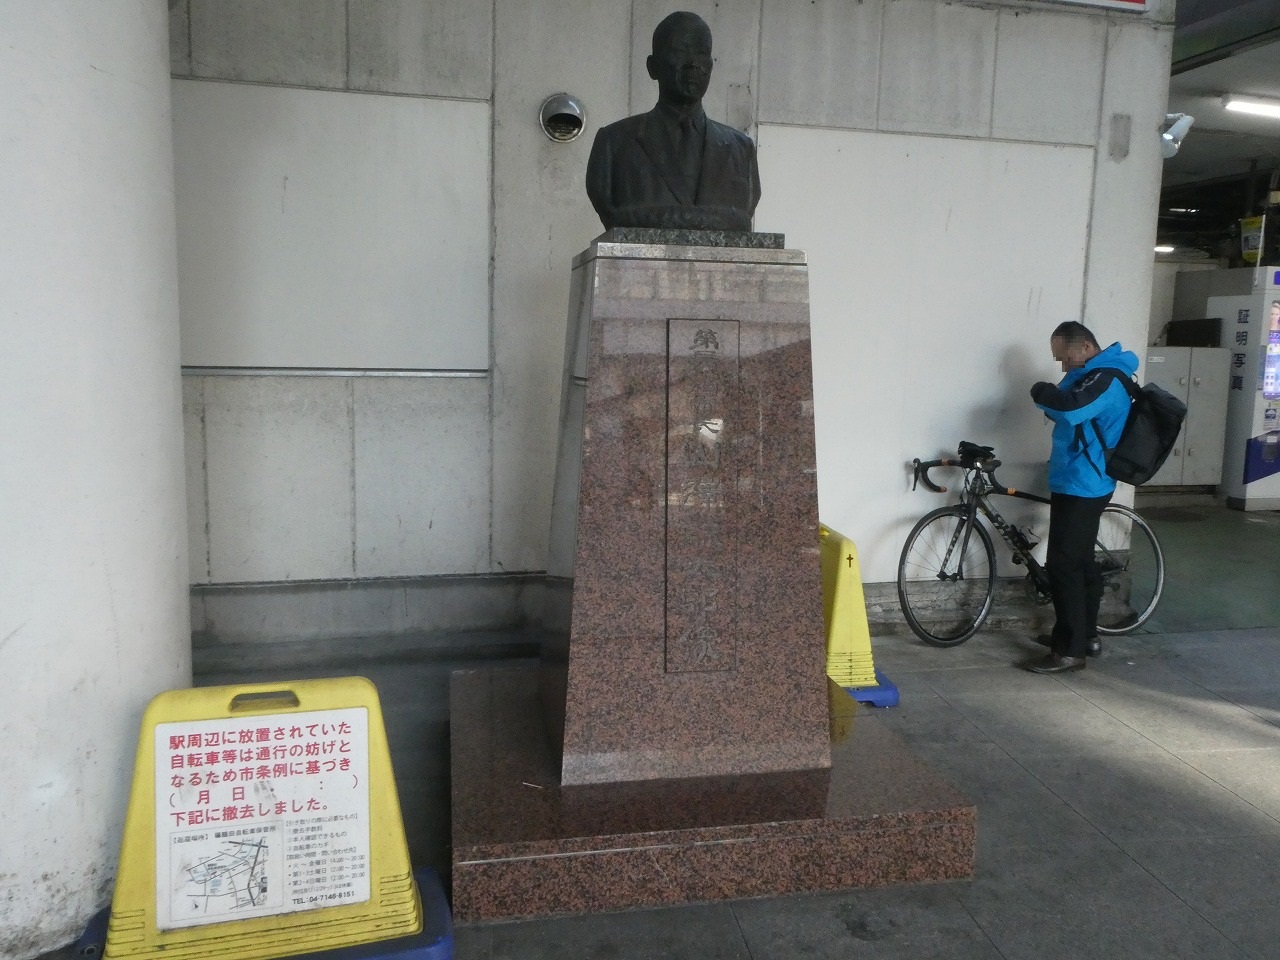 「山澤諒太郎(やまざわりょうたろう)」の銅像